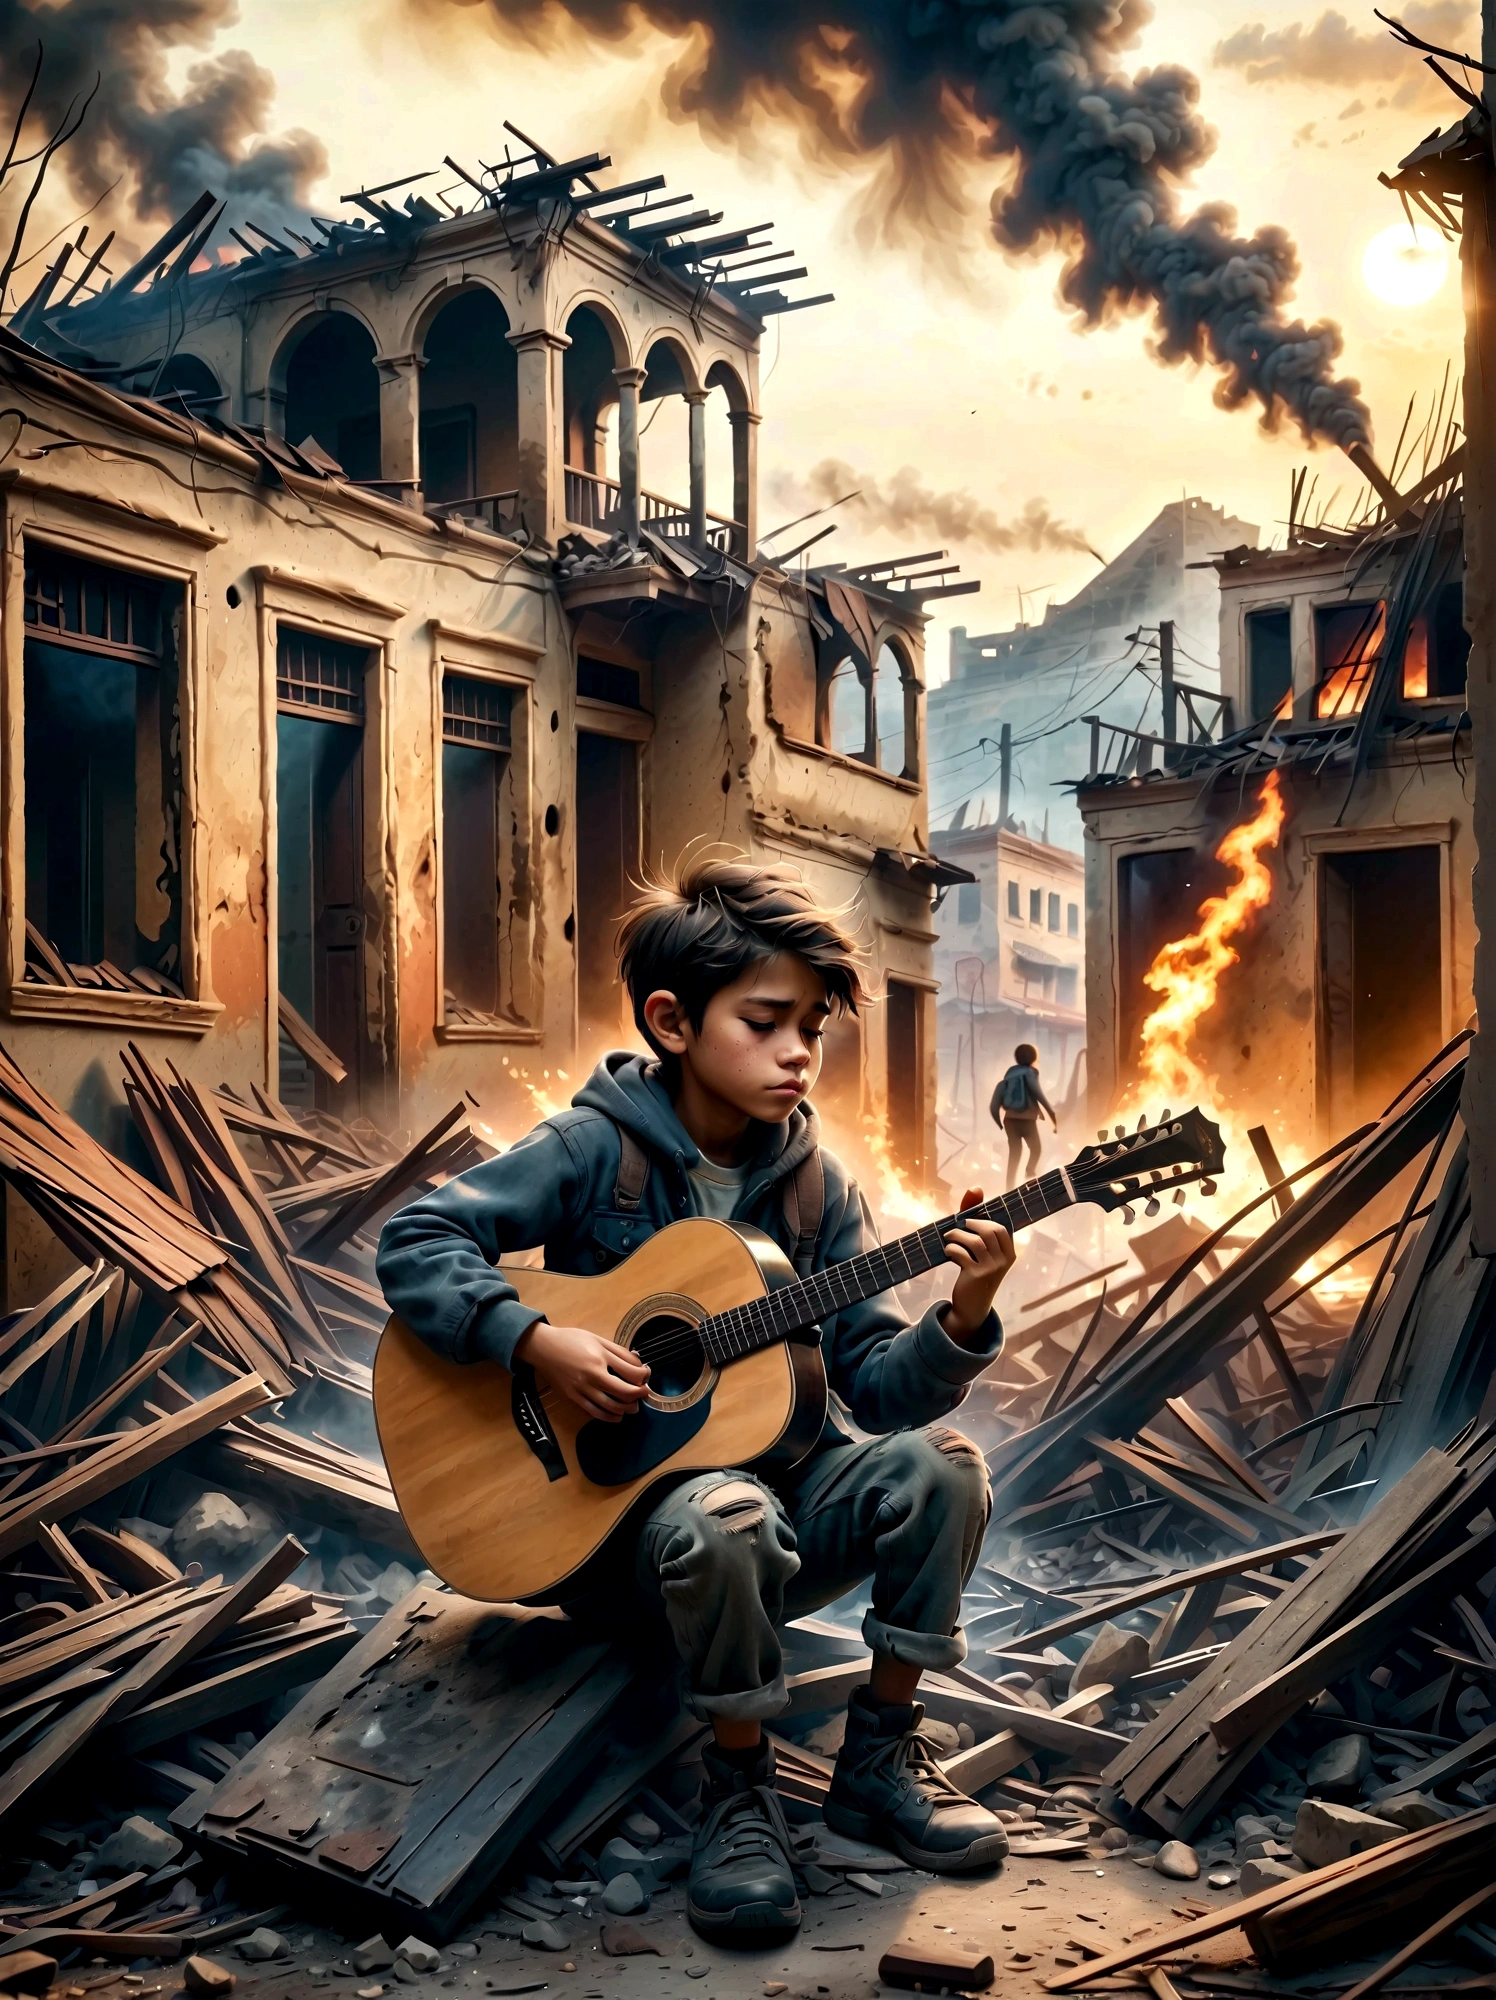 在战乱之中, 烟雾弥漫的废墟, 一个孩子正在弹吉他. 这一场景捕捉到了周围环境的破坏与人们的纯真之间的鲜明对比。 . 废墟里满是瓦砾和建筑残骸, 背景是烟雾和火焰. 孩子的表情很阴沉, 反映了严峻的现实. 整体氛围凄美而感人, 用柔和的色彩和戏剧性的灯光来强调音乐所代表的荒凉和希望的曙光.